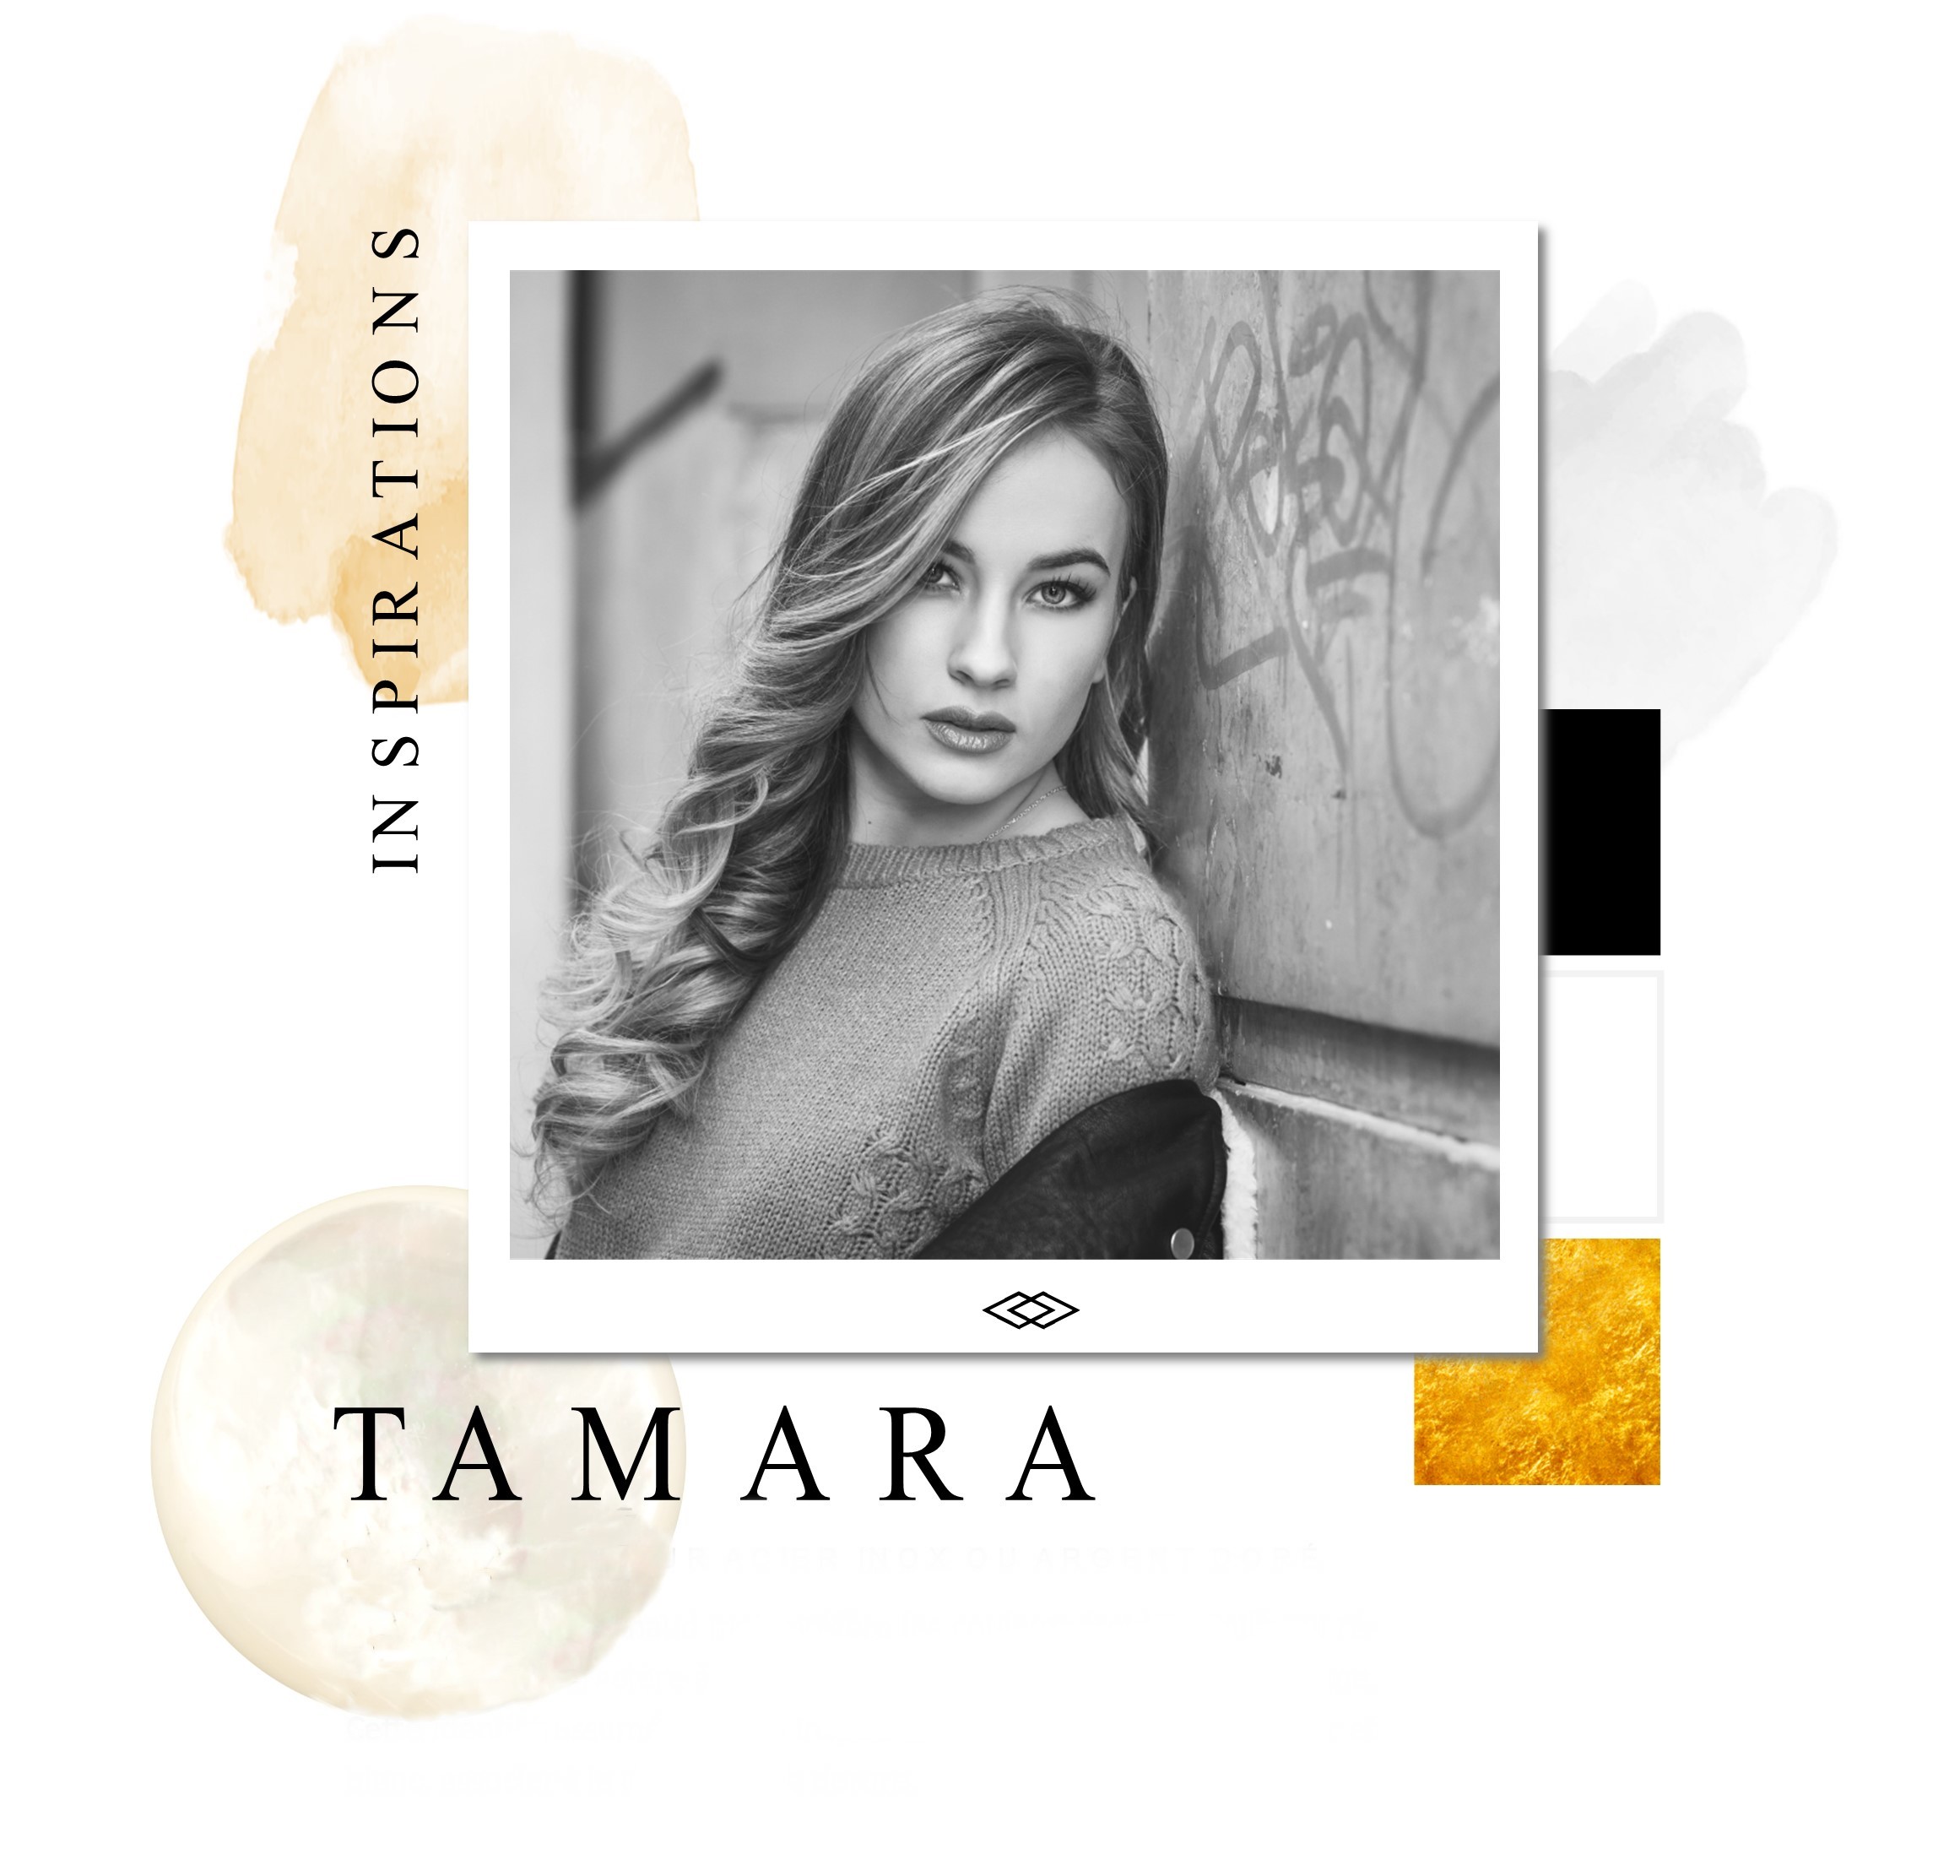 Tamara, collection de bijoux acier, pierres et nacre par Identités bijoux, marque auvergnate de bijoux basée à Clermont-Ferrand